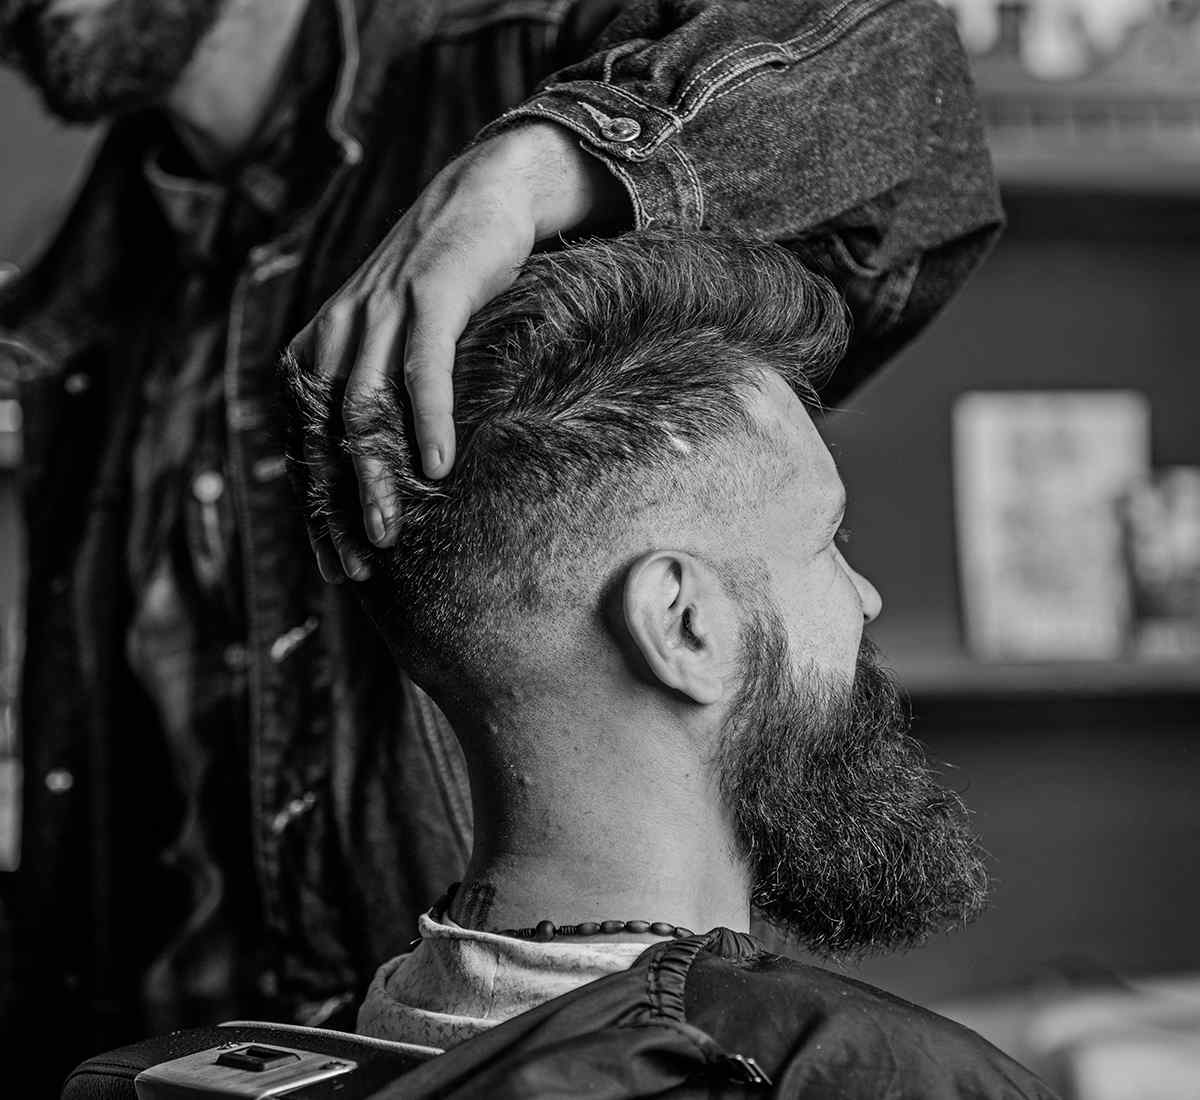 https://kapsalonjolandawils.com/wp-content/uploads/2021/11/great_pride_barber.jpg